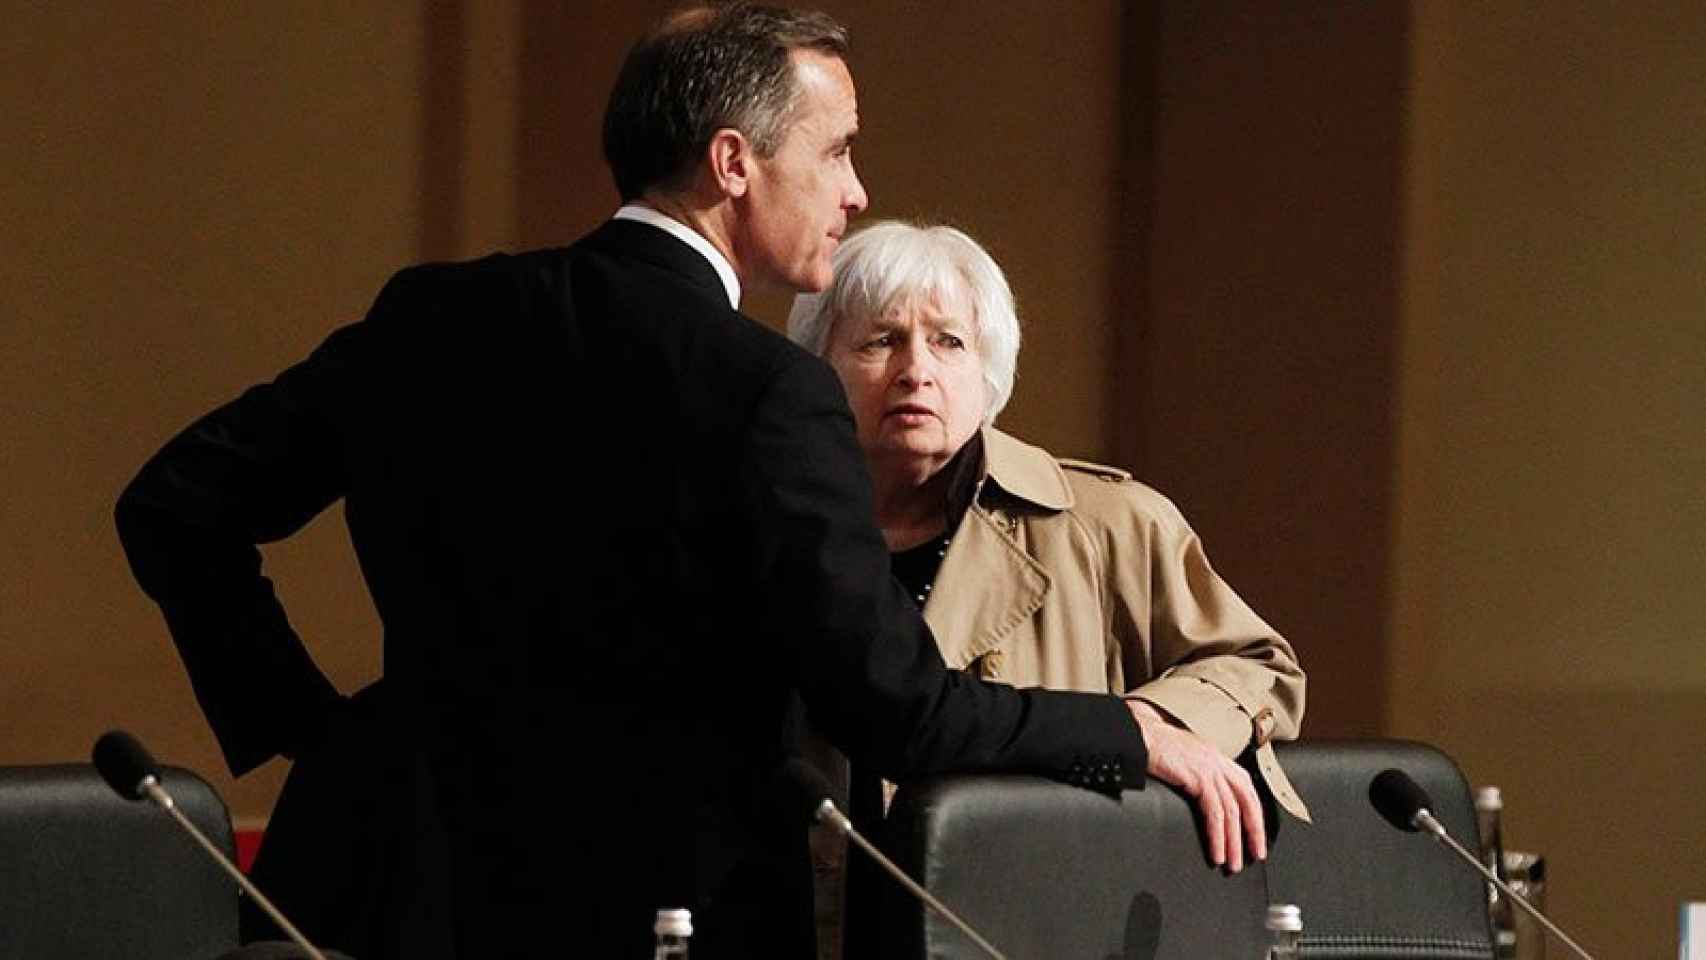 Mark Carney, gobernador del Banco de Inglaterra, y Yanet Yellen, presidenta de la Reserva Federal de EEUU, en una foto de archivo.